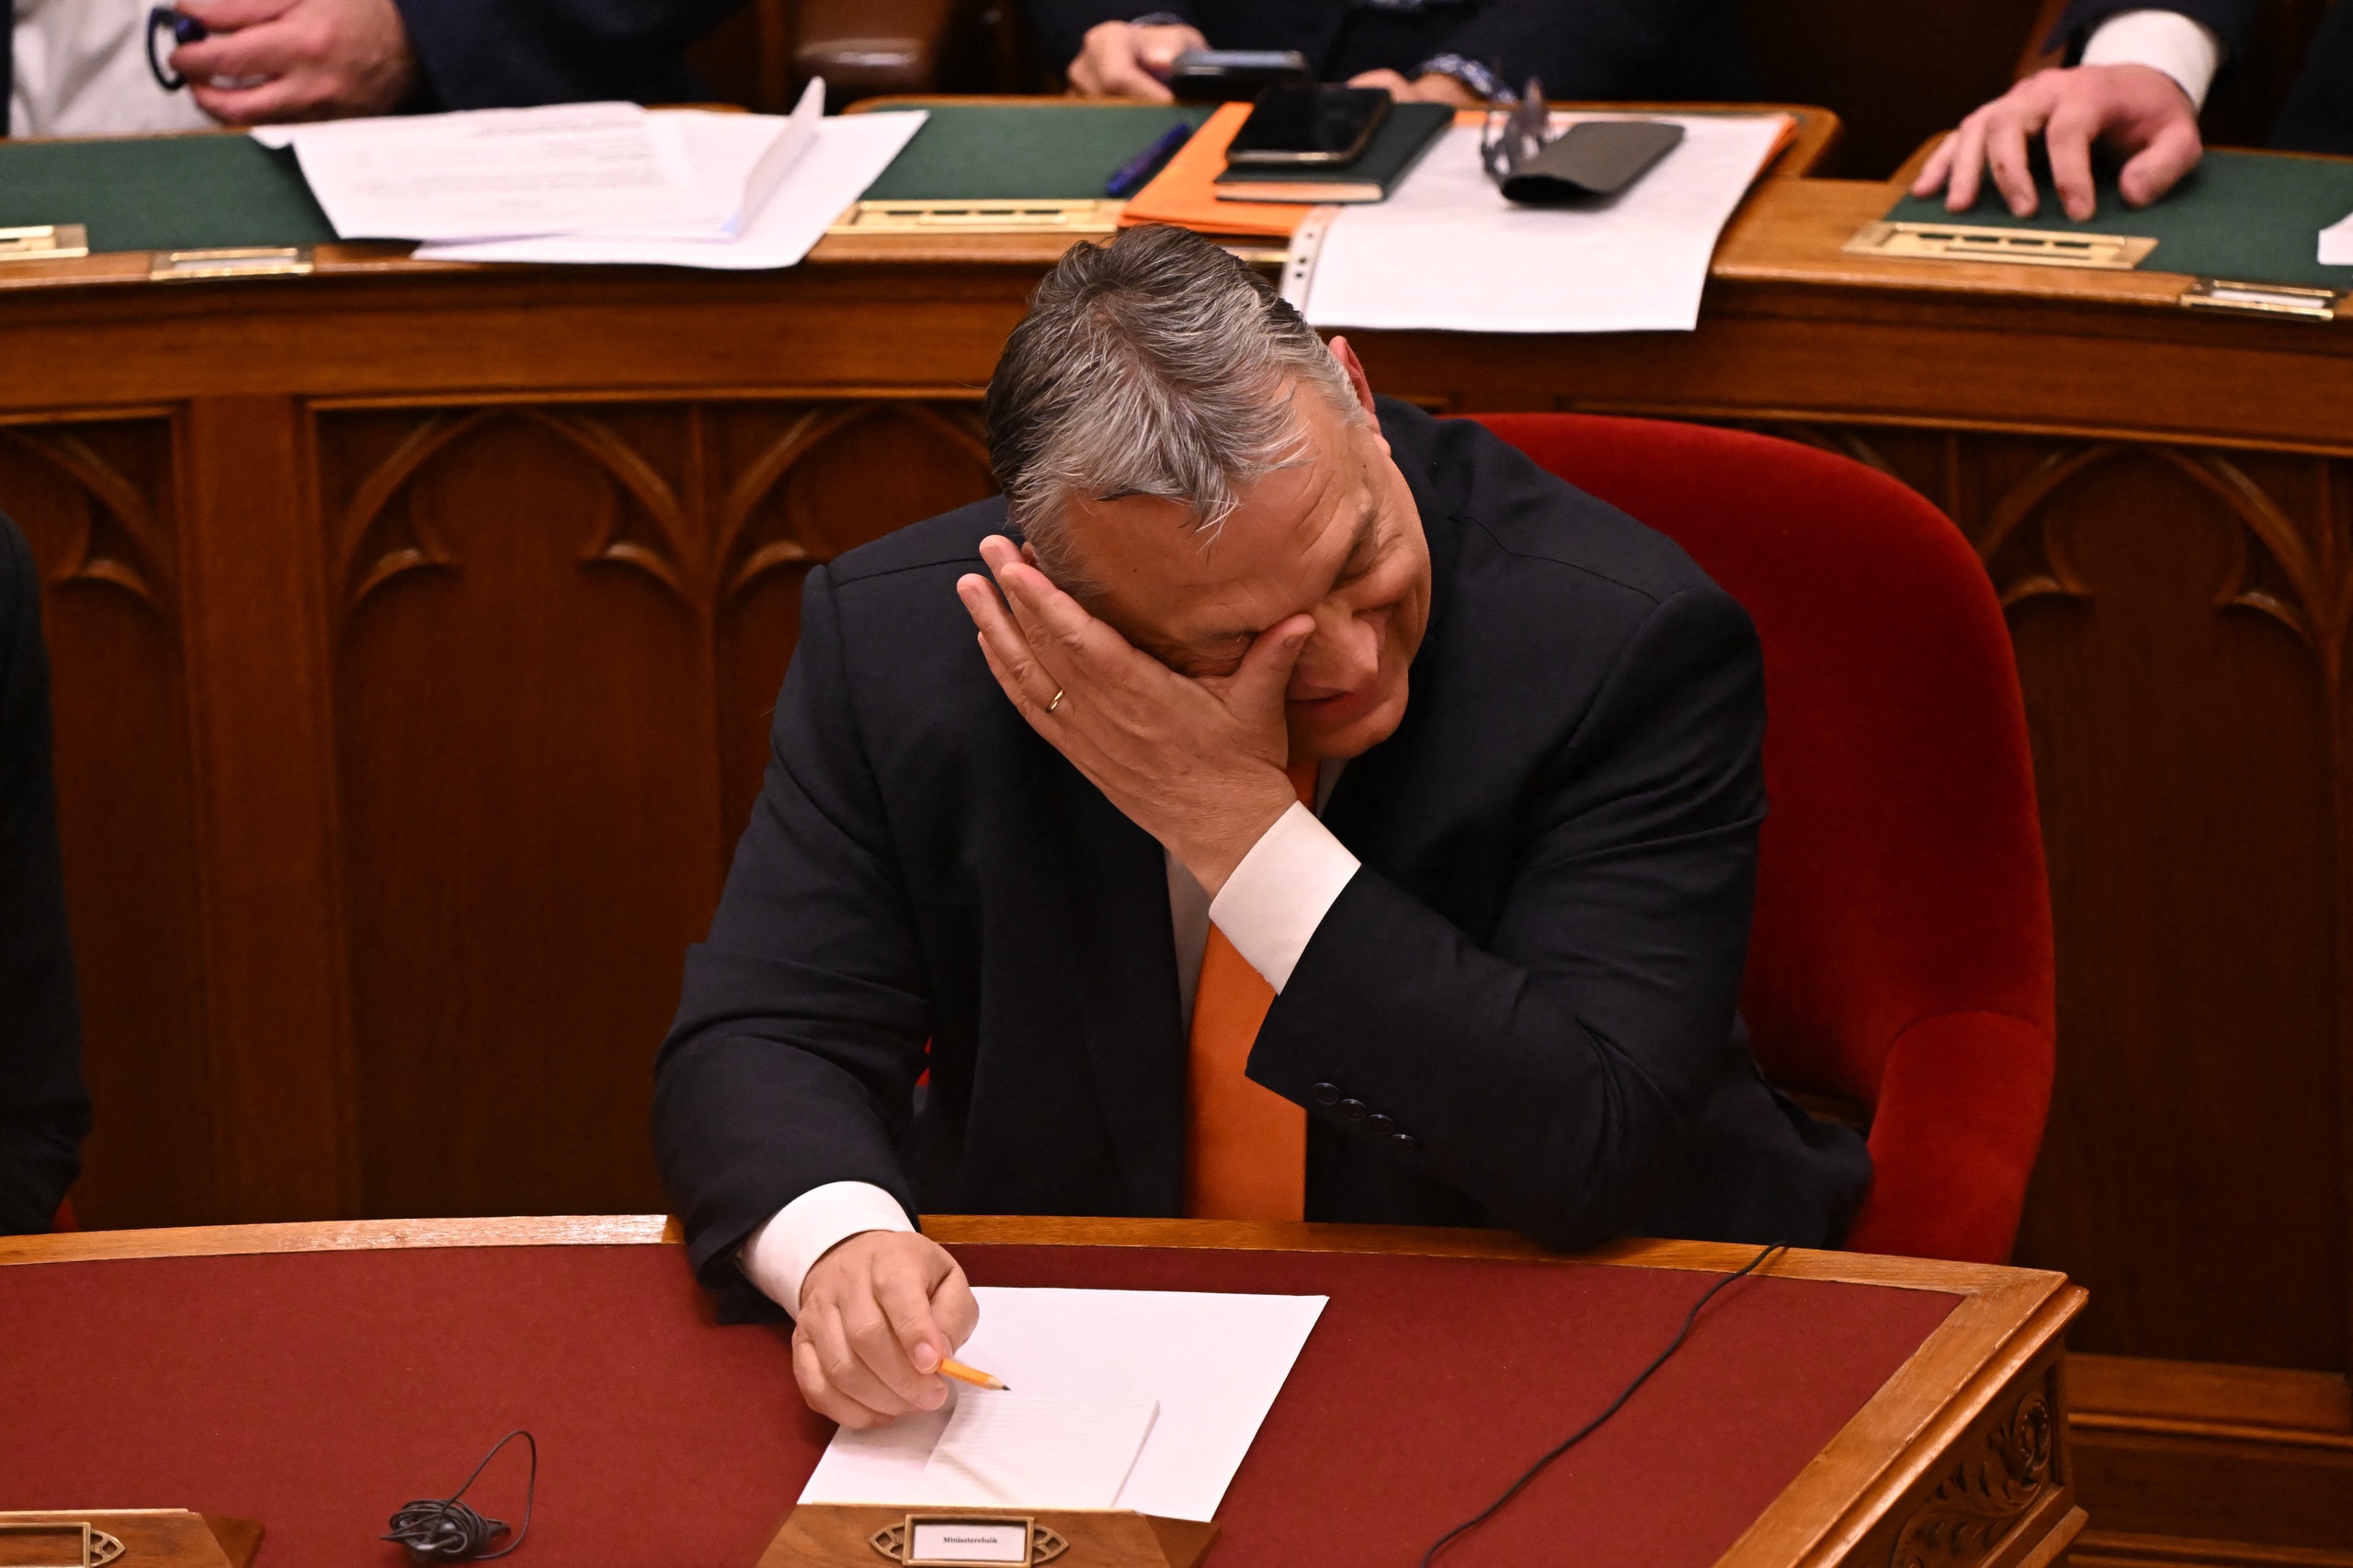 De Hongaarse premier Viktor Orbán. Het Hongaarse parlement heeft met een overweldigende meerderheid een reeks hervormingen goedgekeurd om de onafhankelijkheid van de rechterlijke macht te verbeteren. Dat meldt Bloomberg. 